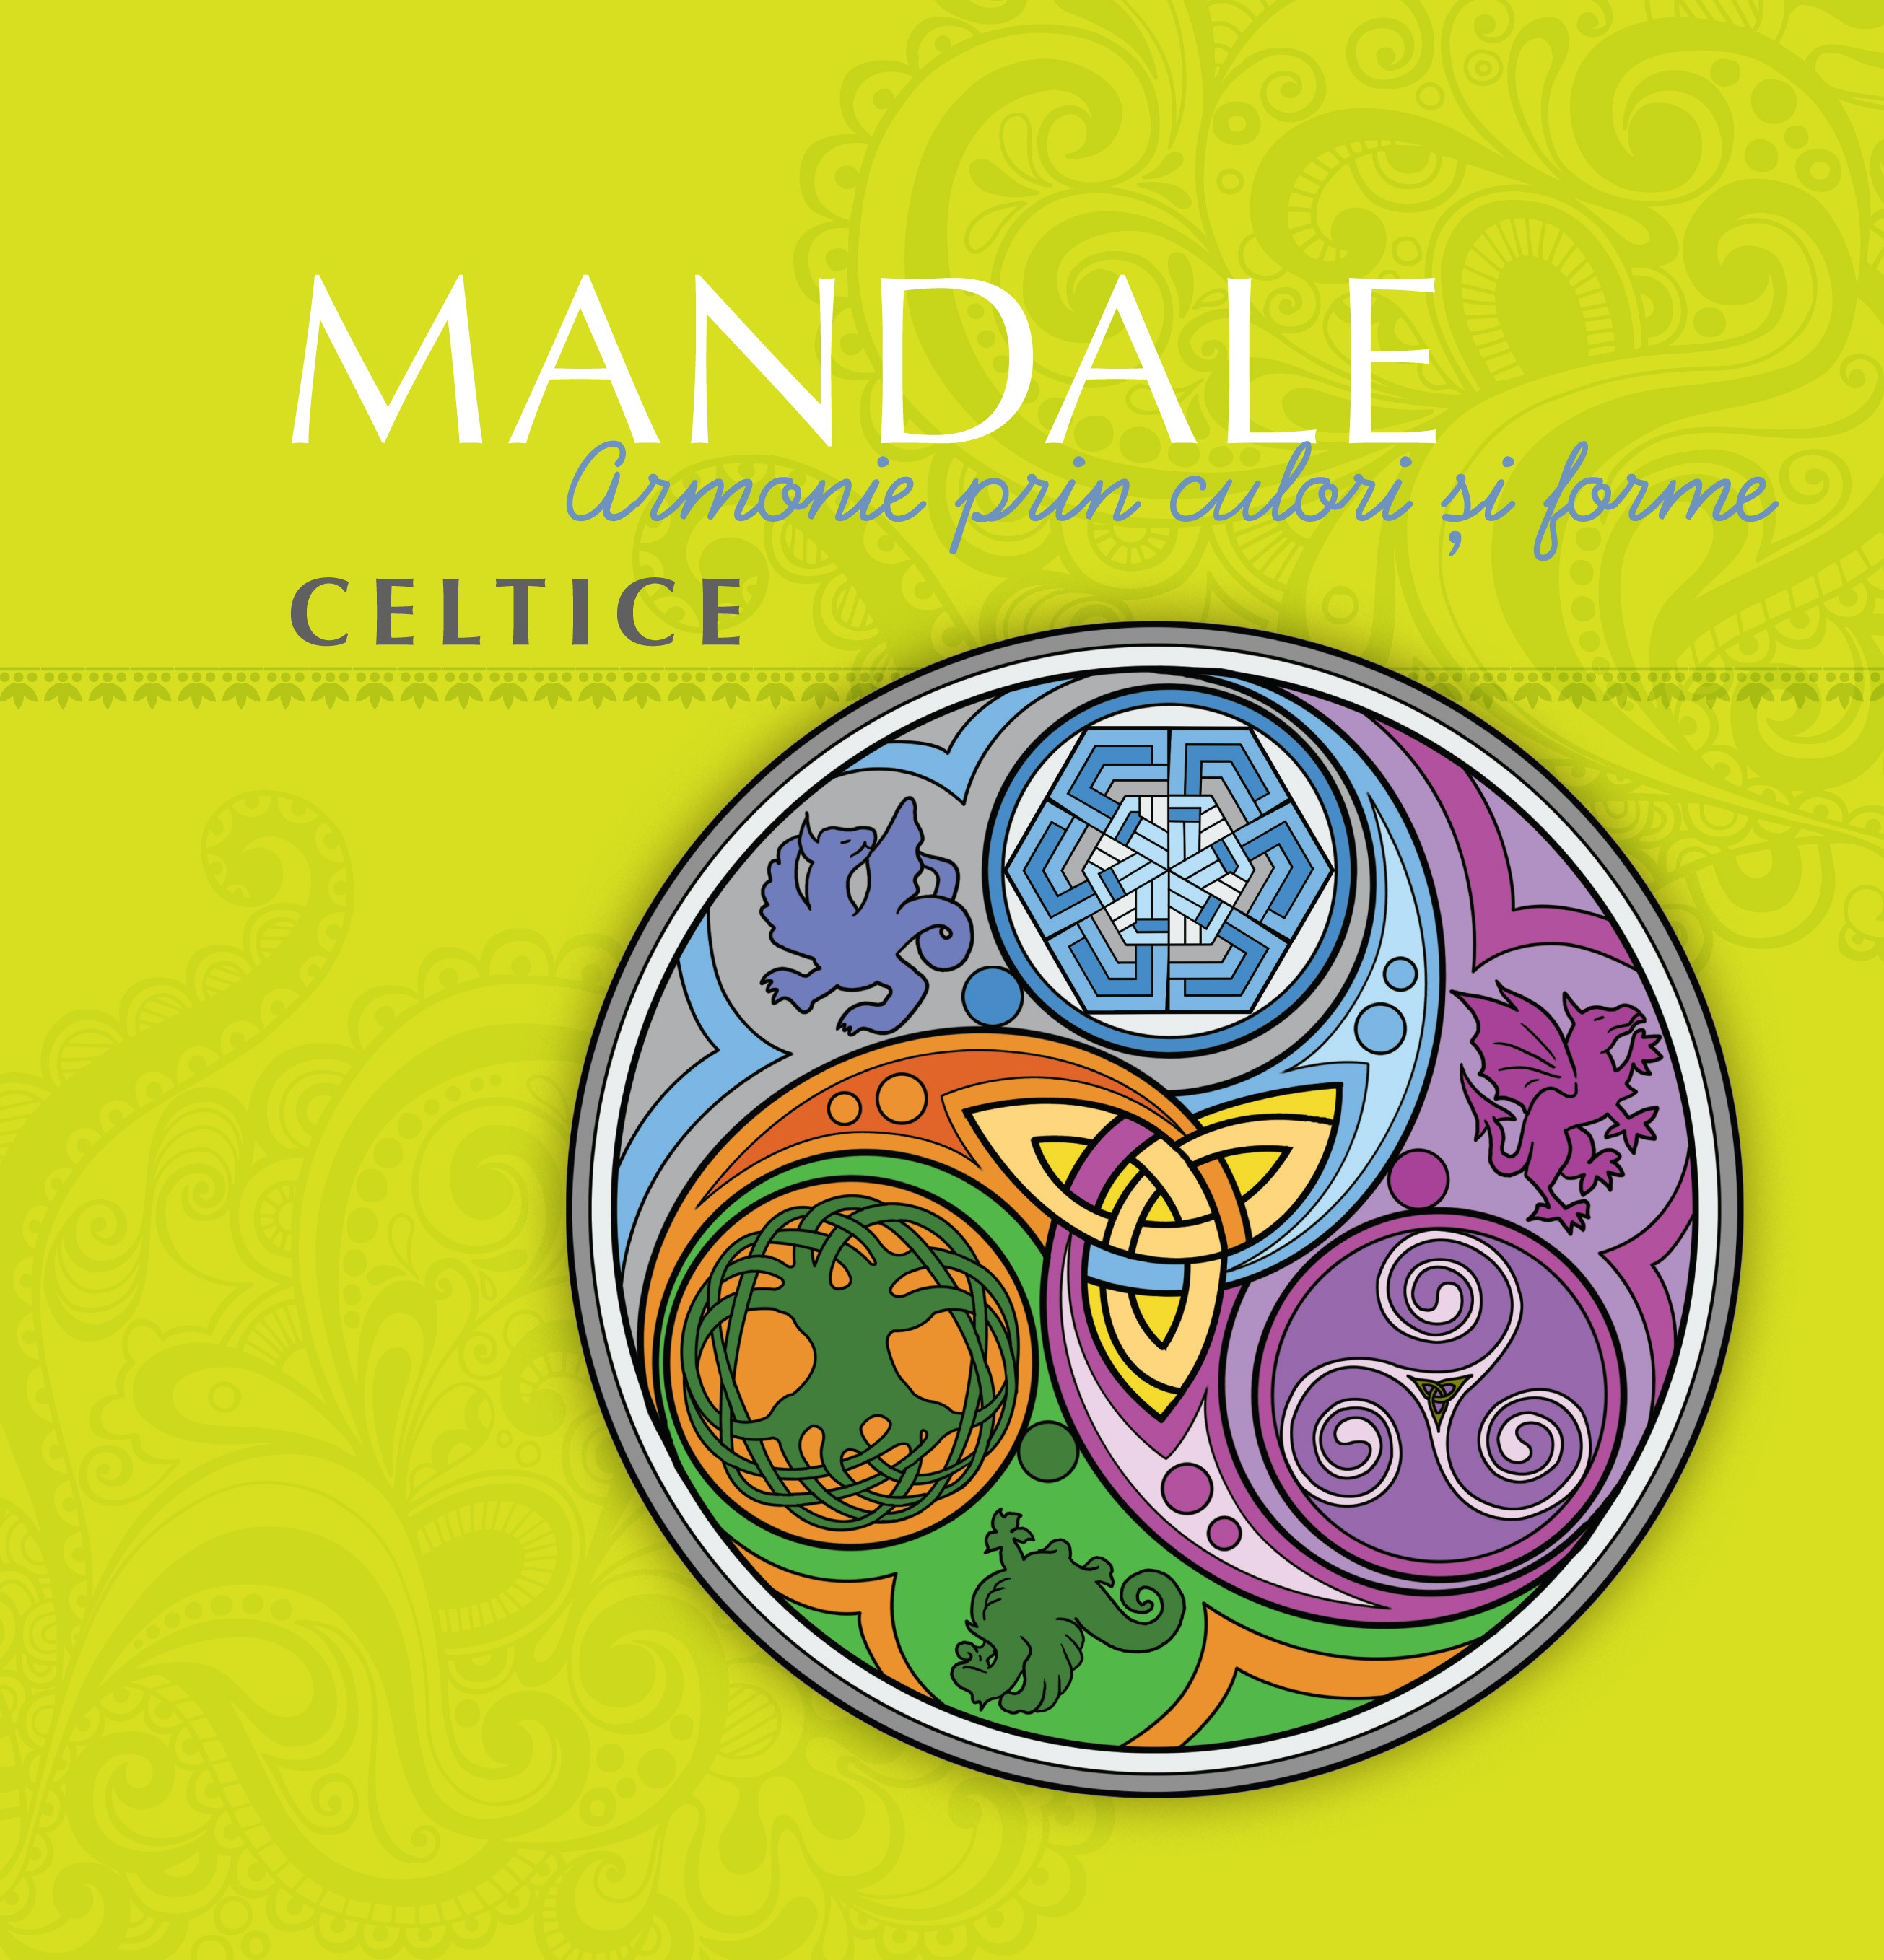 Coperta cărții: Mandale celtice - lonnieyoungblood.com